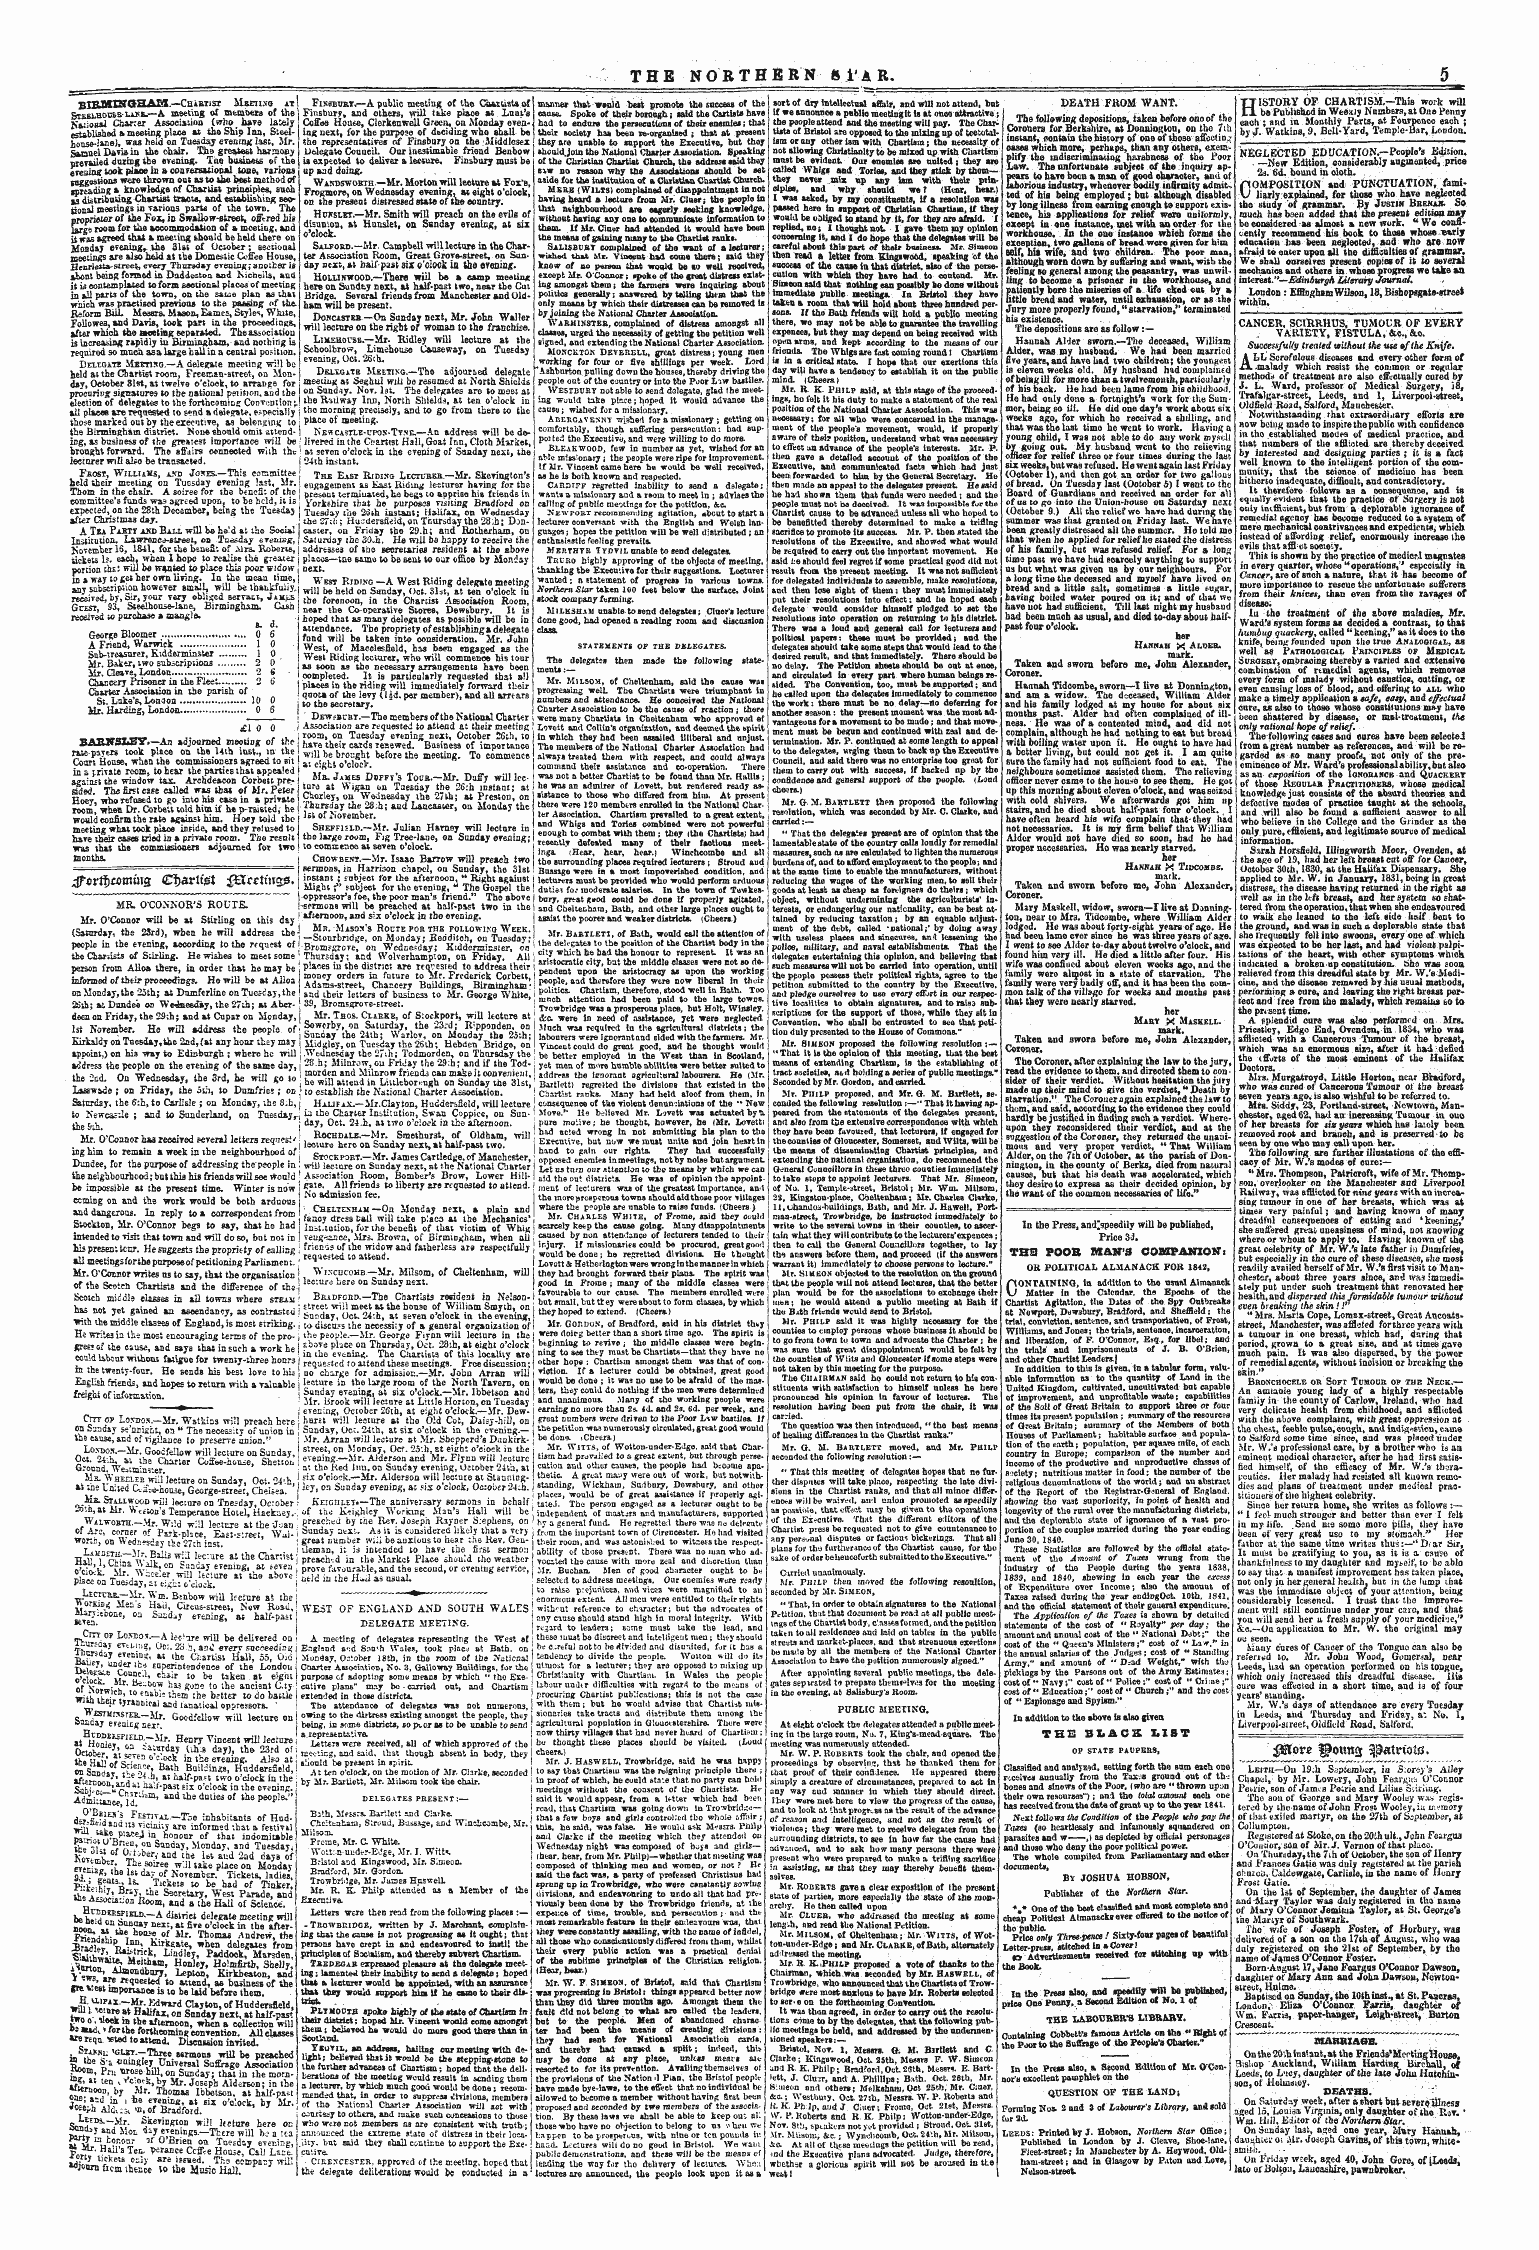 Northern Star (1837-1852): jS F Y, 1st edition - Wlove Wo\M% Aaotnotd